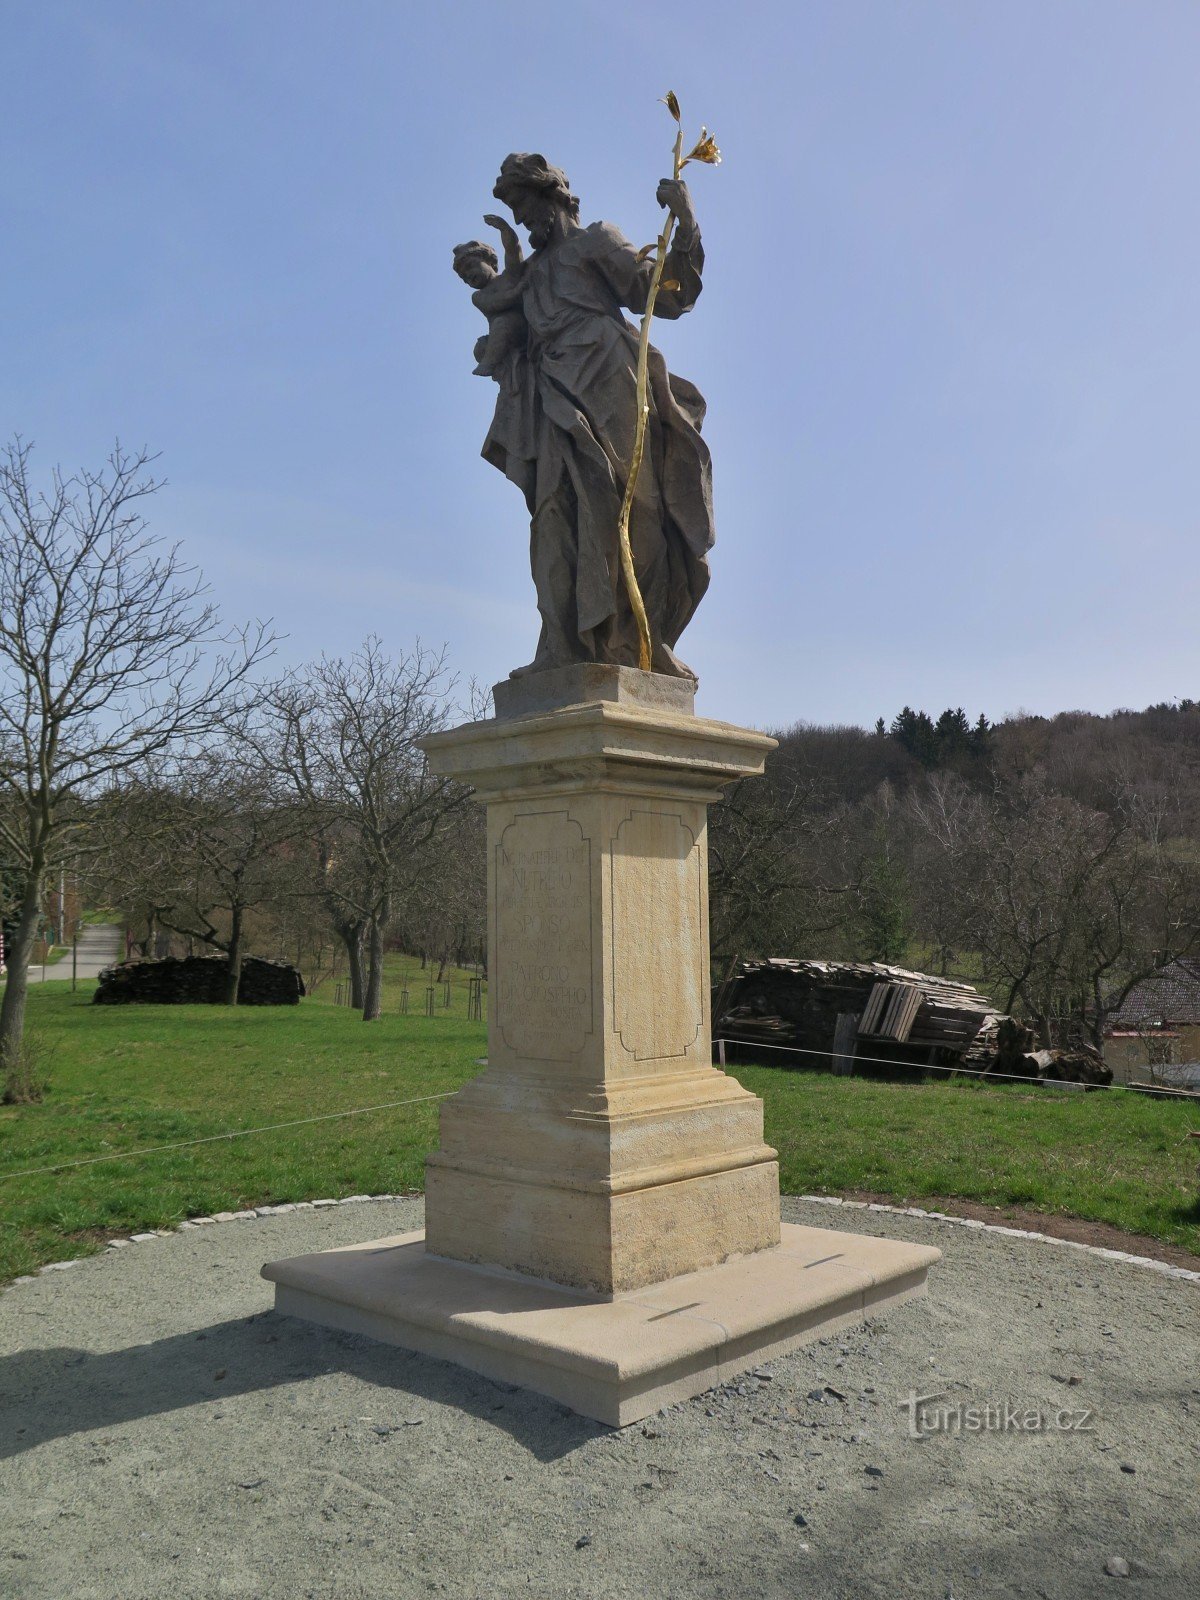 Knínice（博斯科维采附近） - 圣约翰雕像约瑟夫